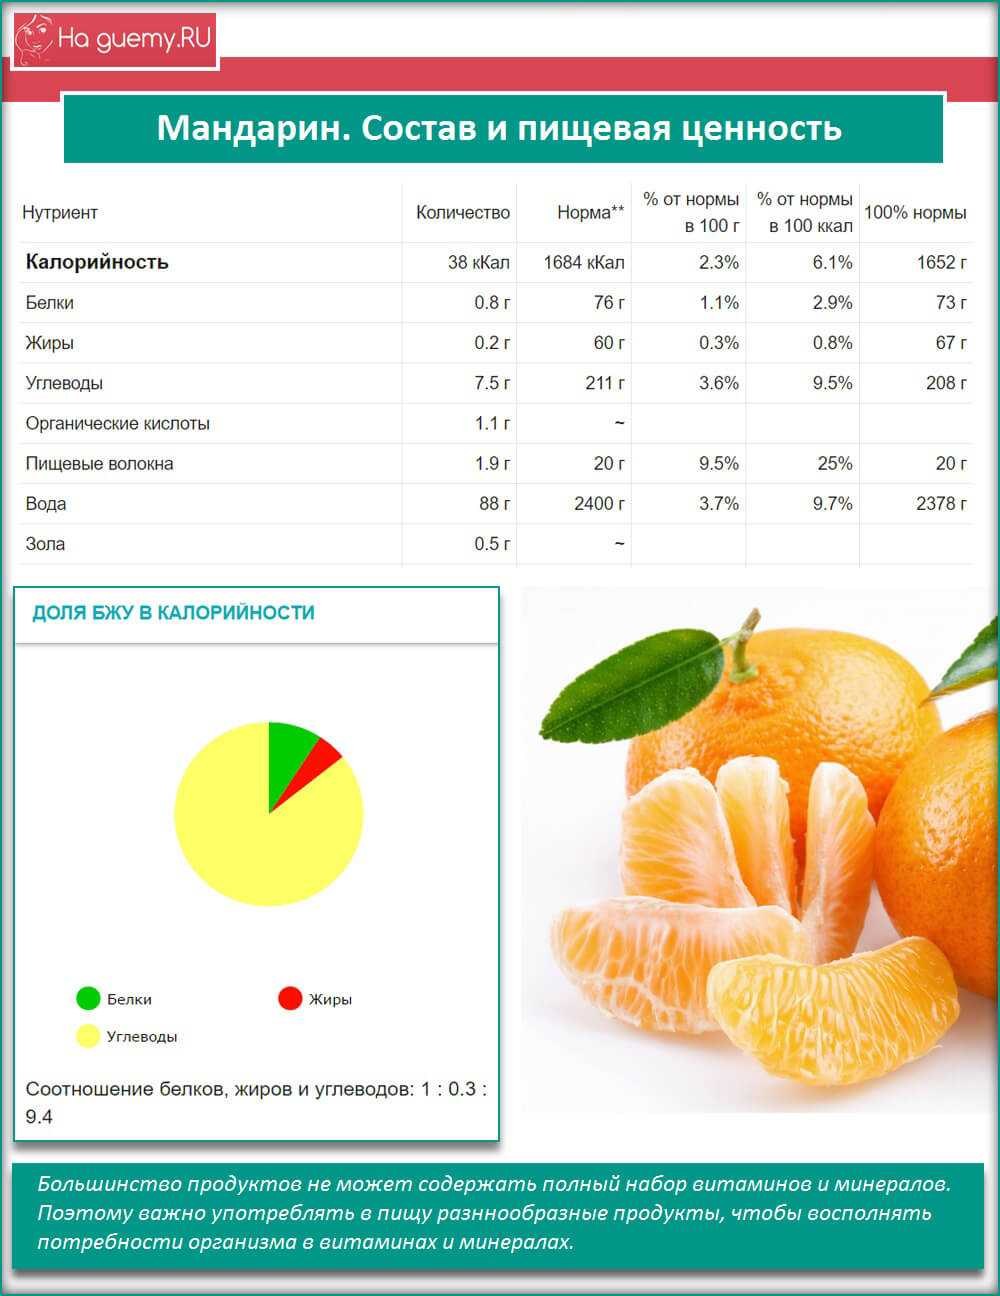 Калорийность 1 апельсина без кожуры. Мандарин состав на 100 грамм витамины. Пищевая ценность мандарина в 100 граммах. Мандарин калорийность на 100 грамм. Энергетическая ценность апельсина в 100 граммах.